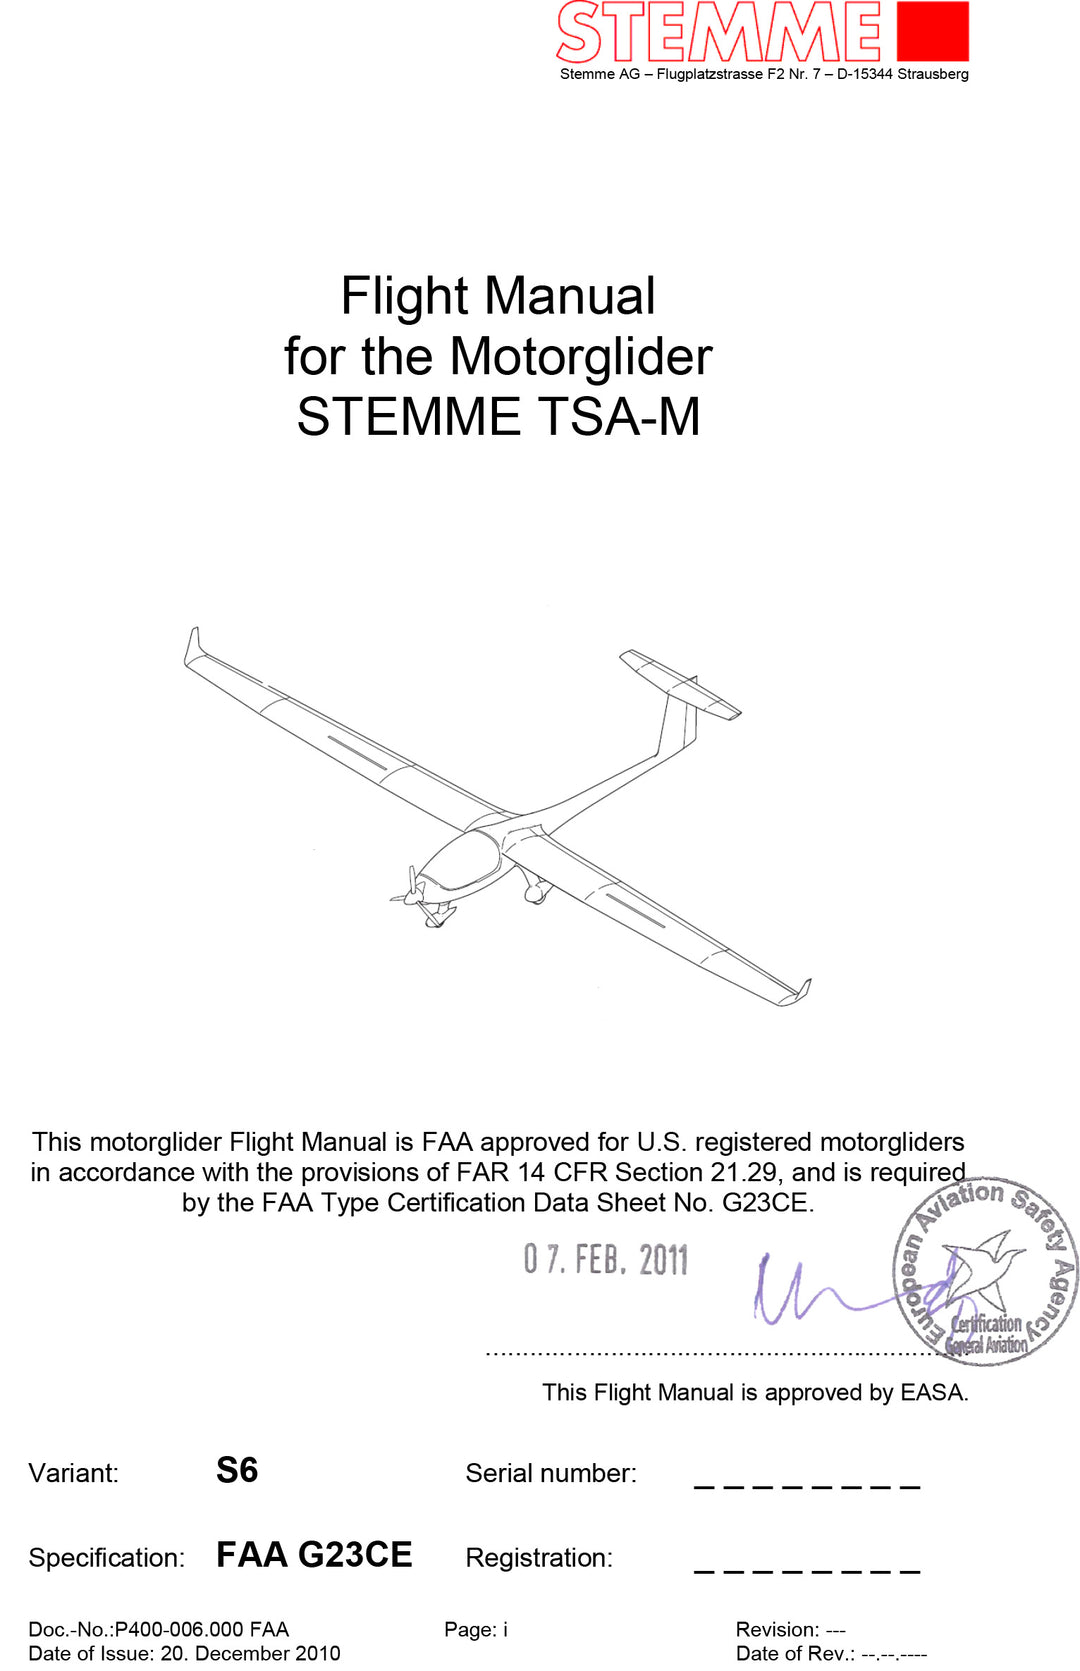 FAA Flight Manual S6